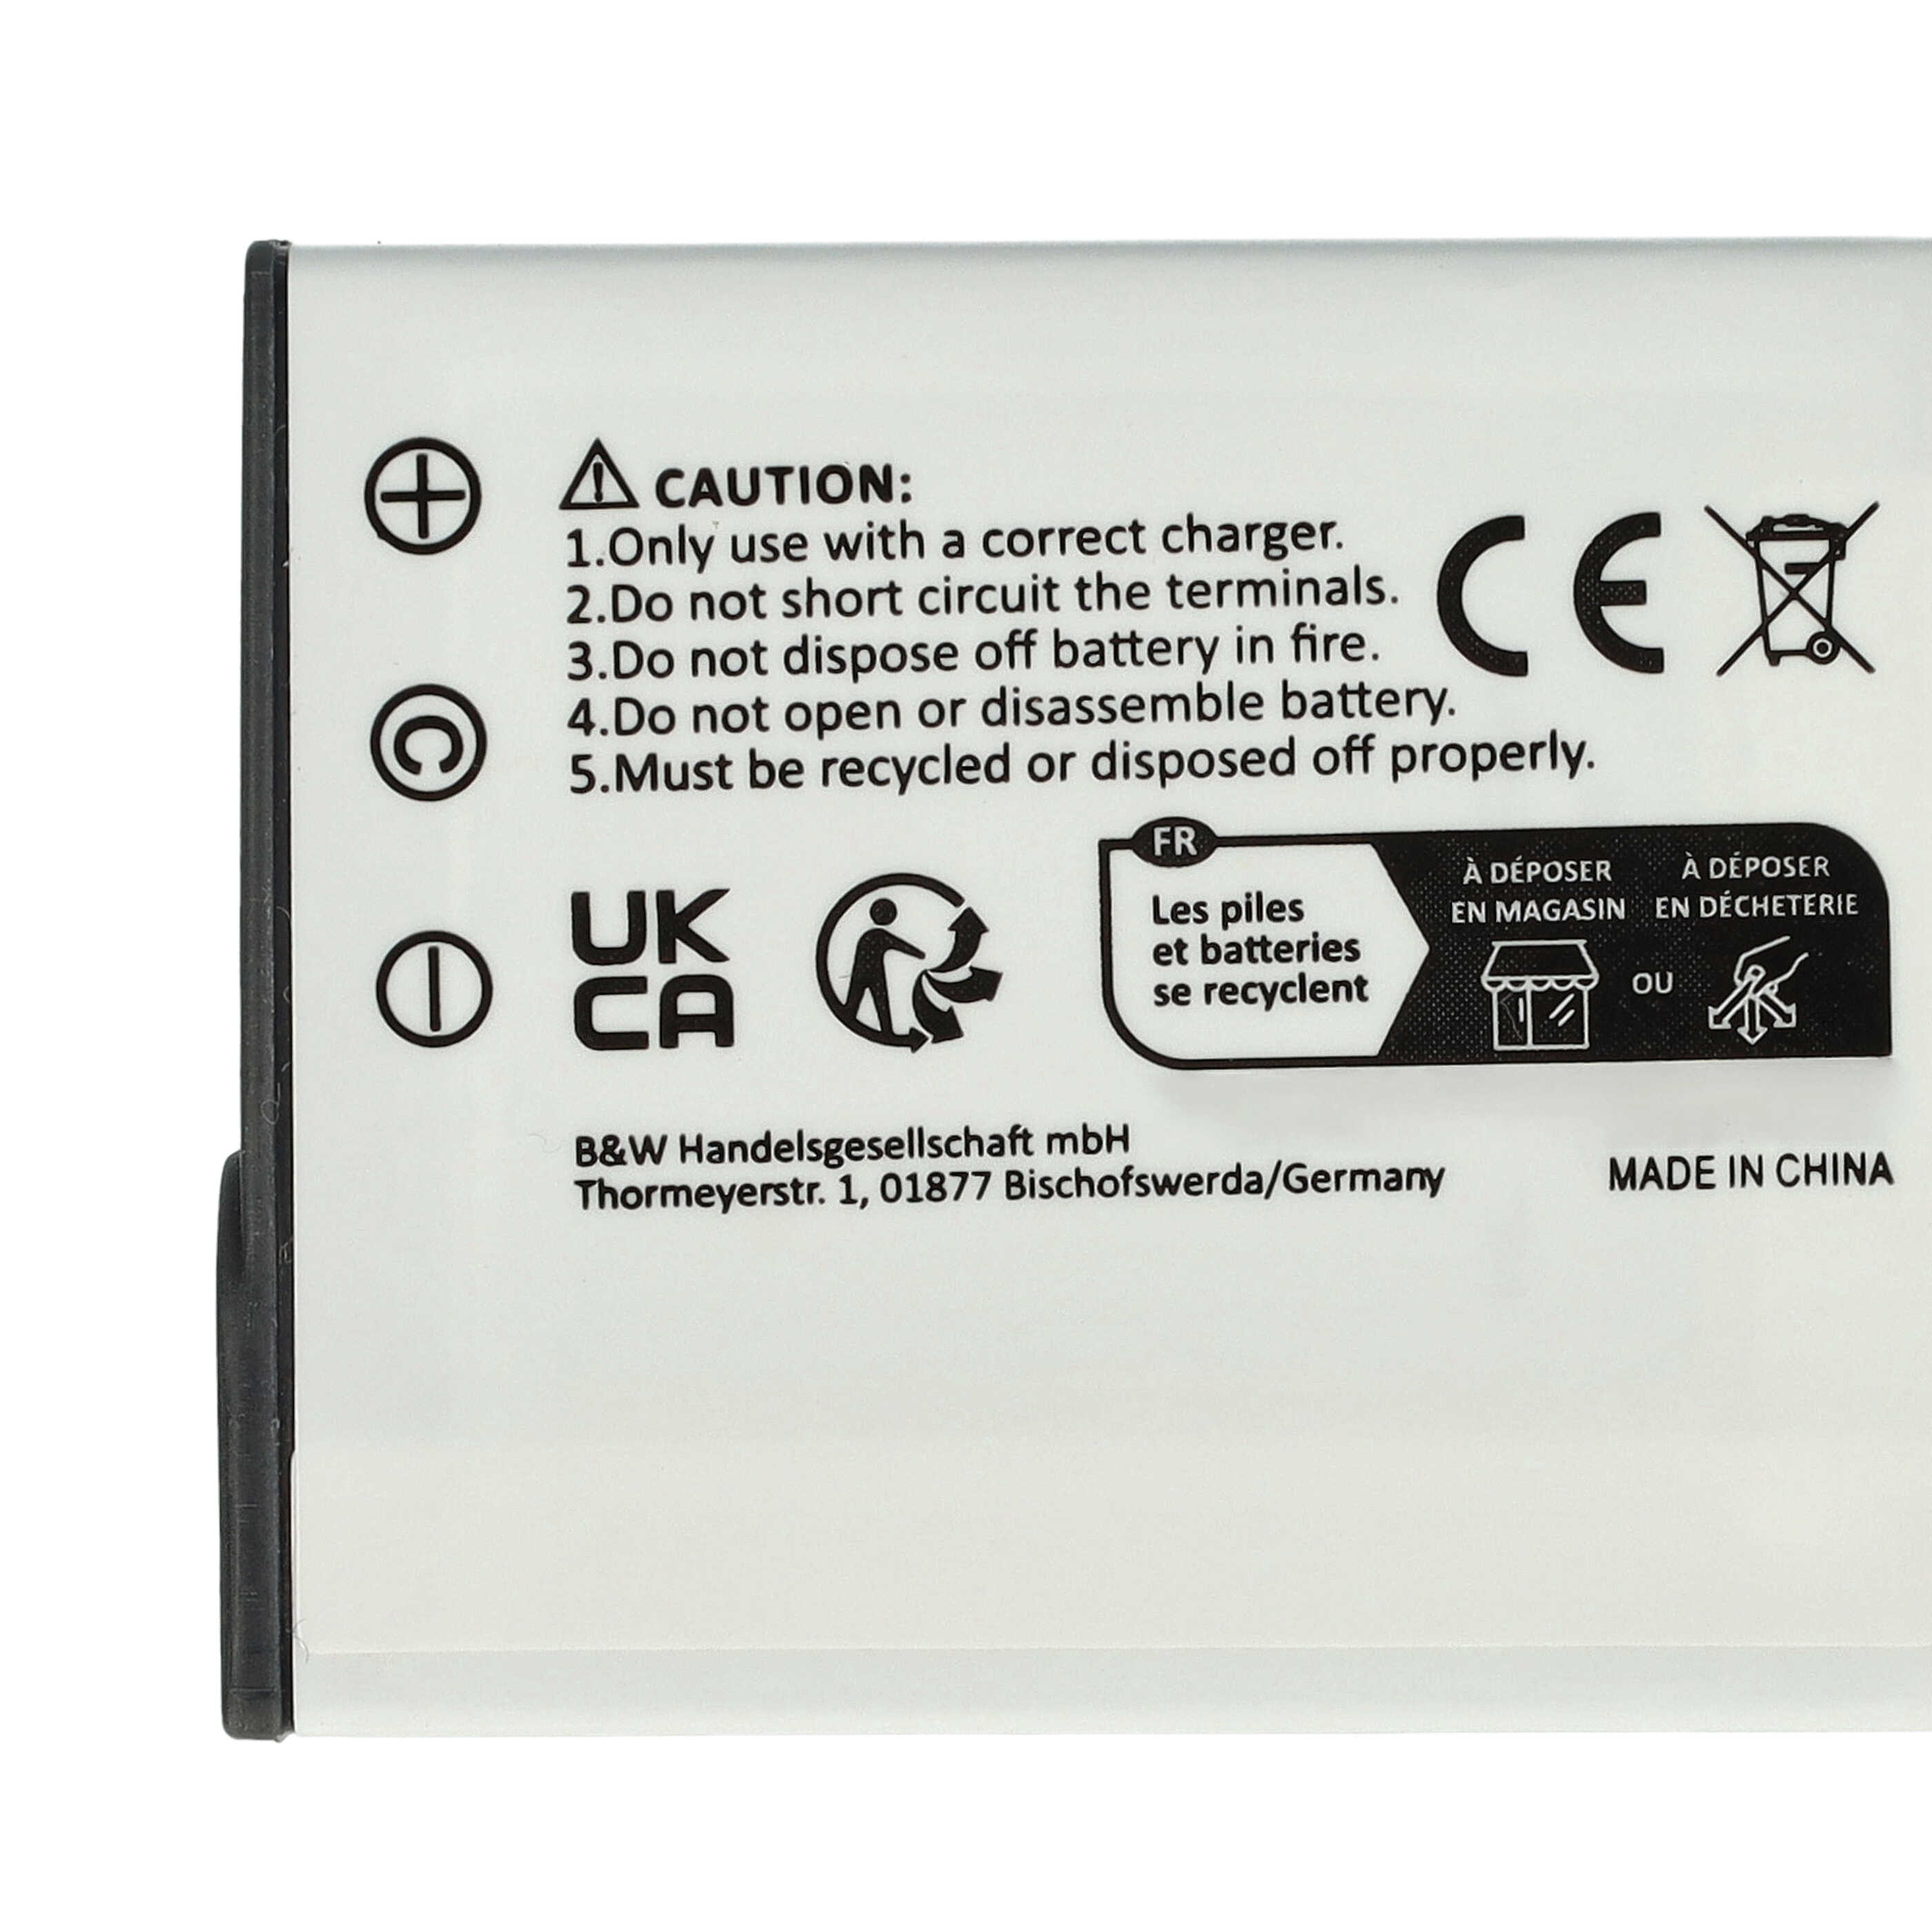 Batterie remplace Sony NP-FG1, NP-BG1 pour appareil photo - 950mAh 3,6V Li-ion